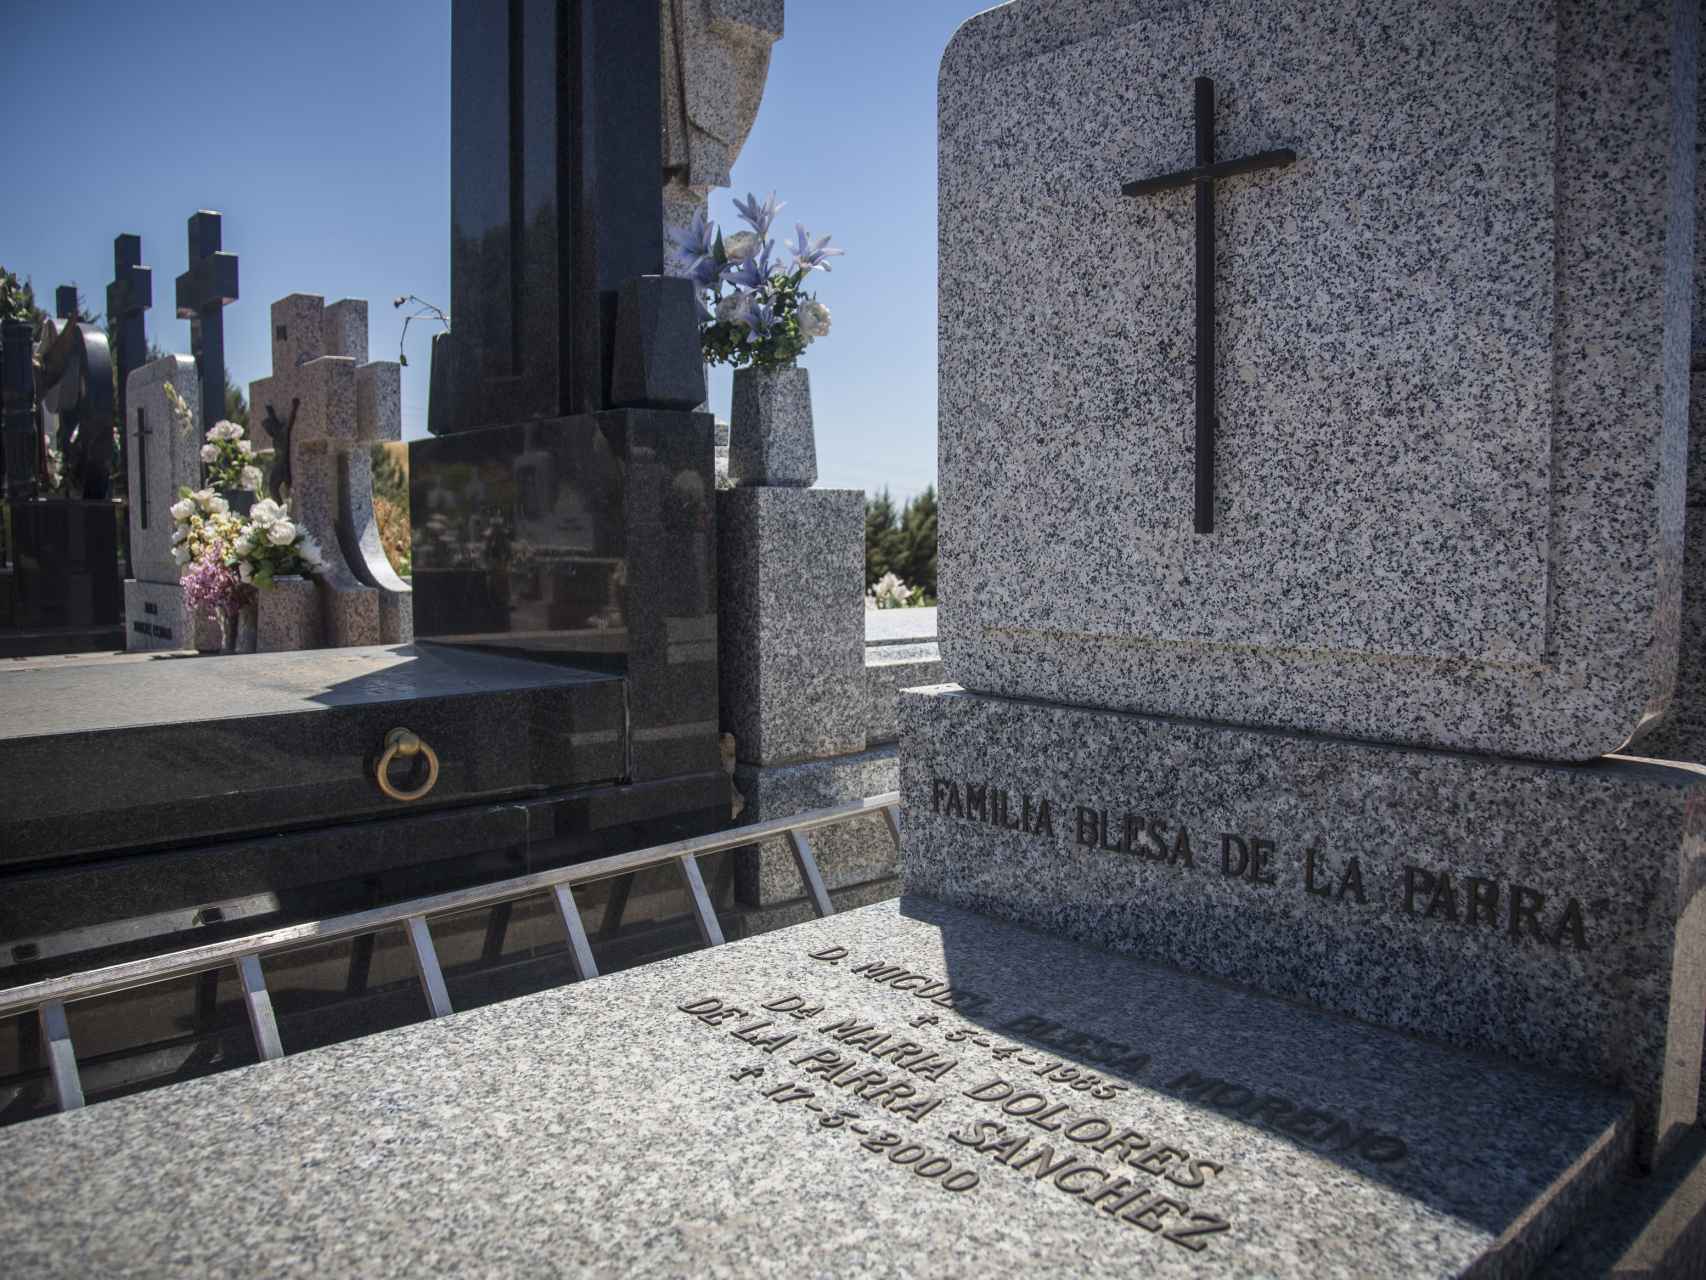 Panteón familiar de los Blesa de la Parra en el cementerio de Linares con los restos mortales de los padres del exbanquero Miguel Blesa aparecido muerto el pasado día 19 de Julio en una finca de Córdoba.